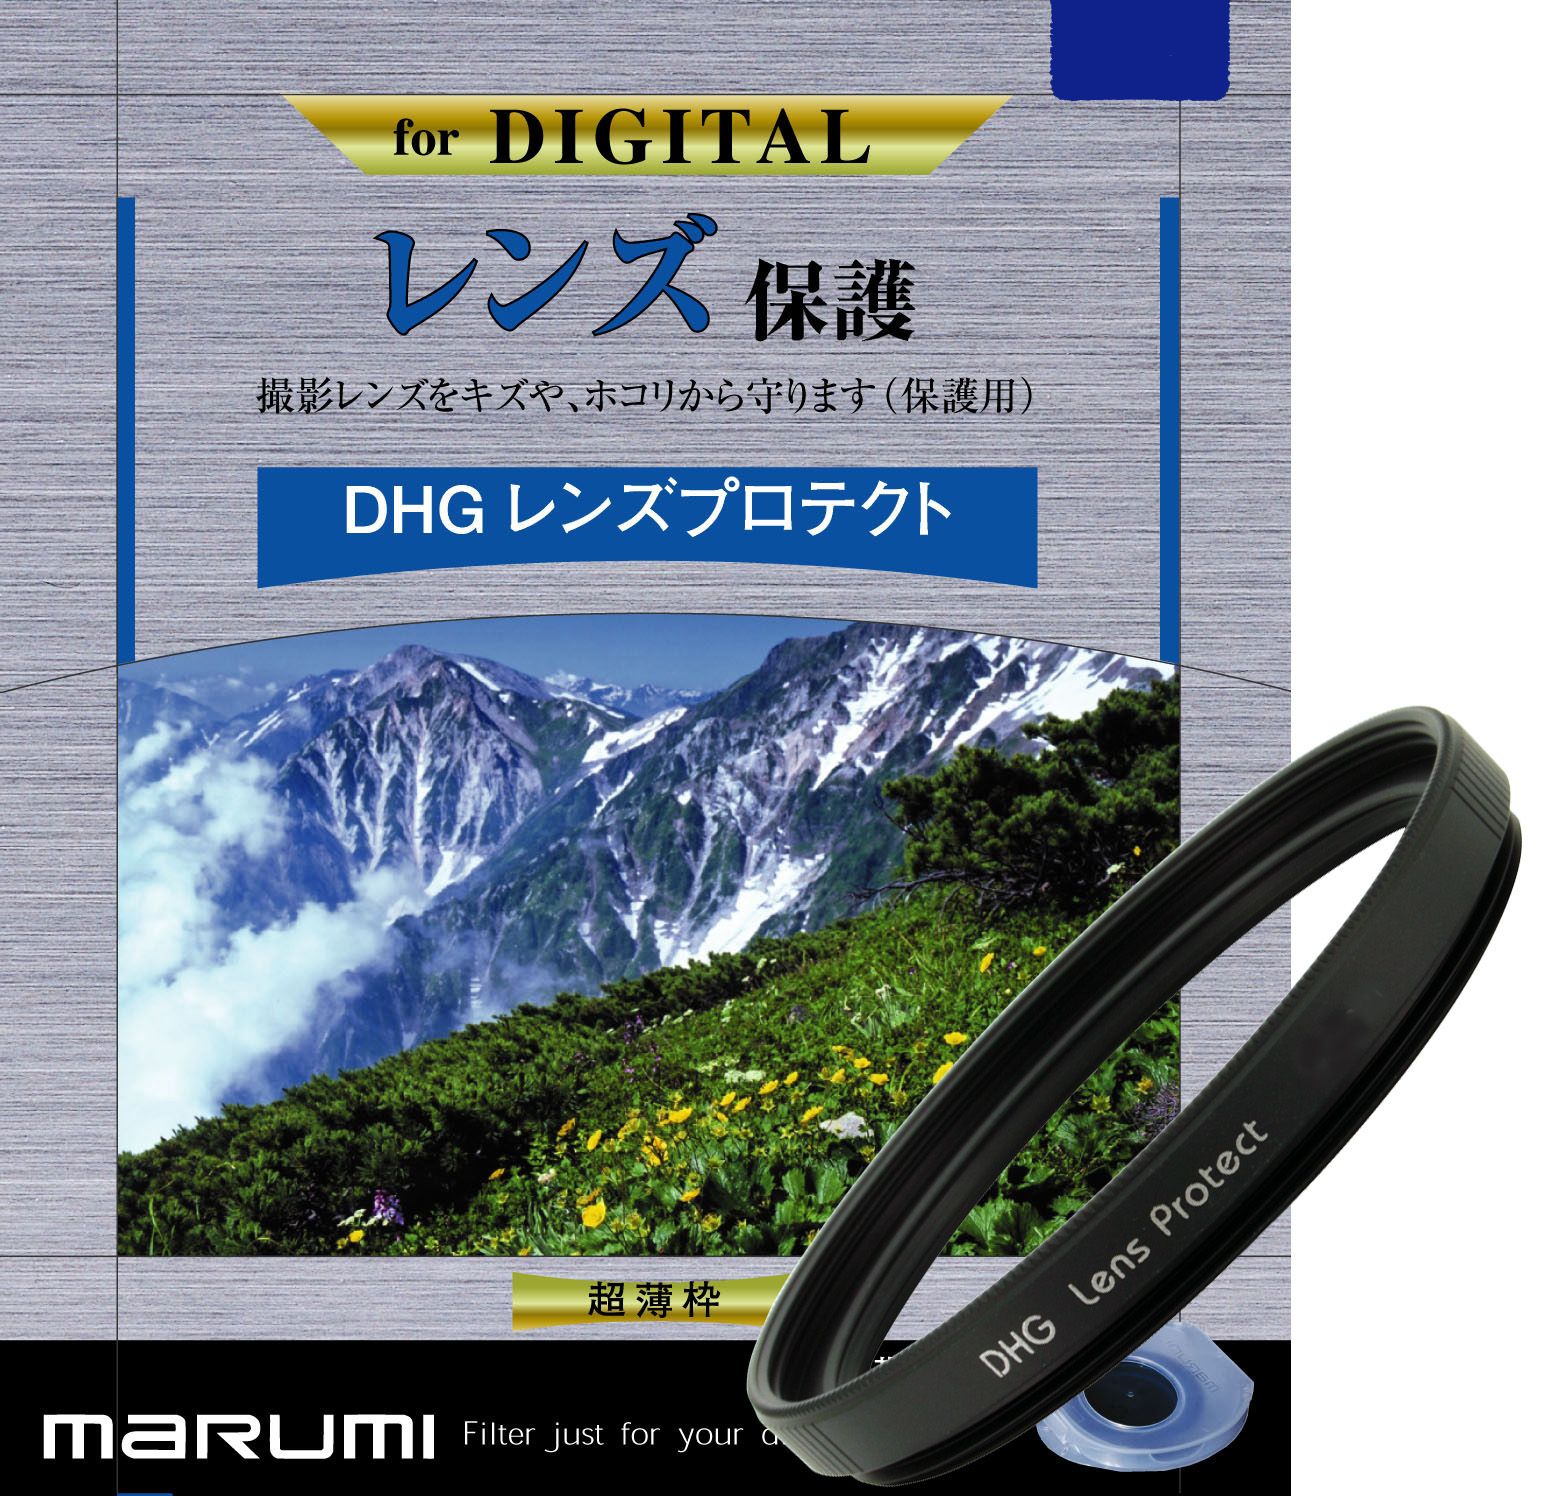 マルミ  DHG レンズプロテクト 37mm [プロテクター] MARUMI